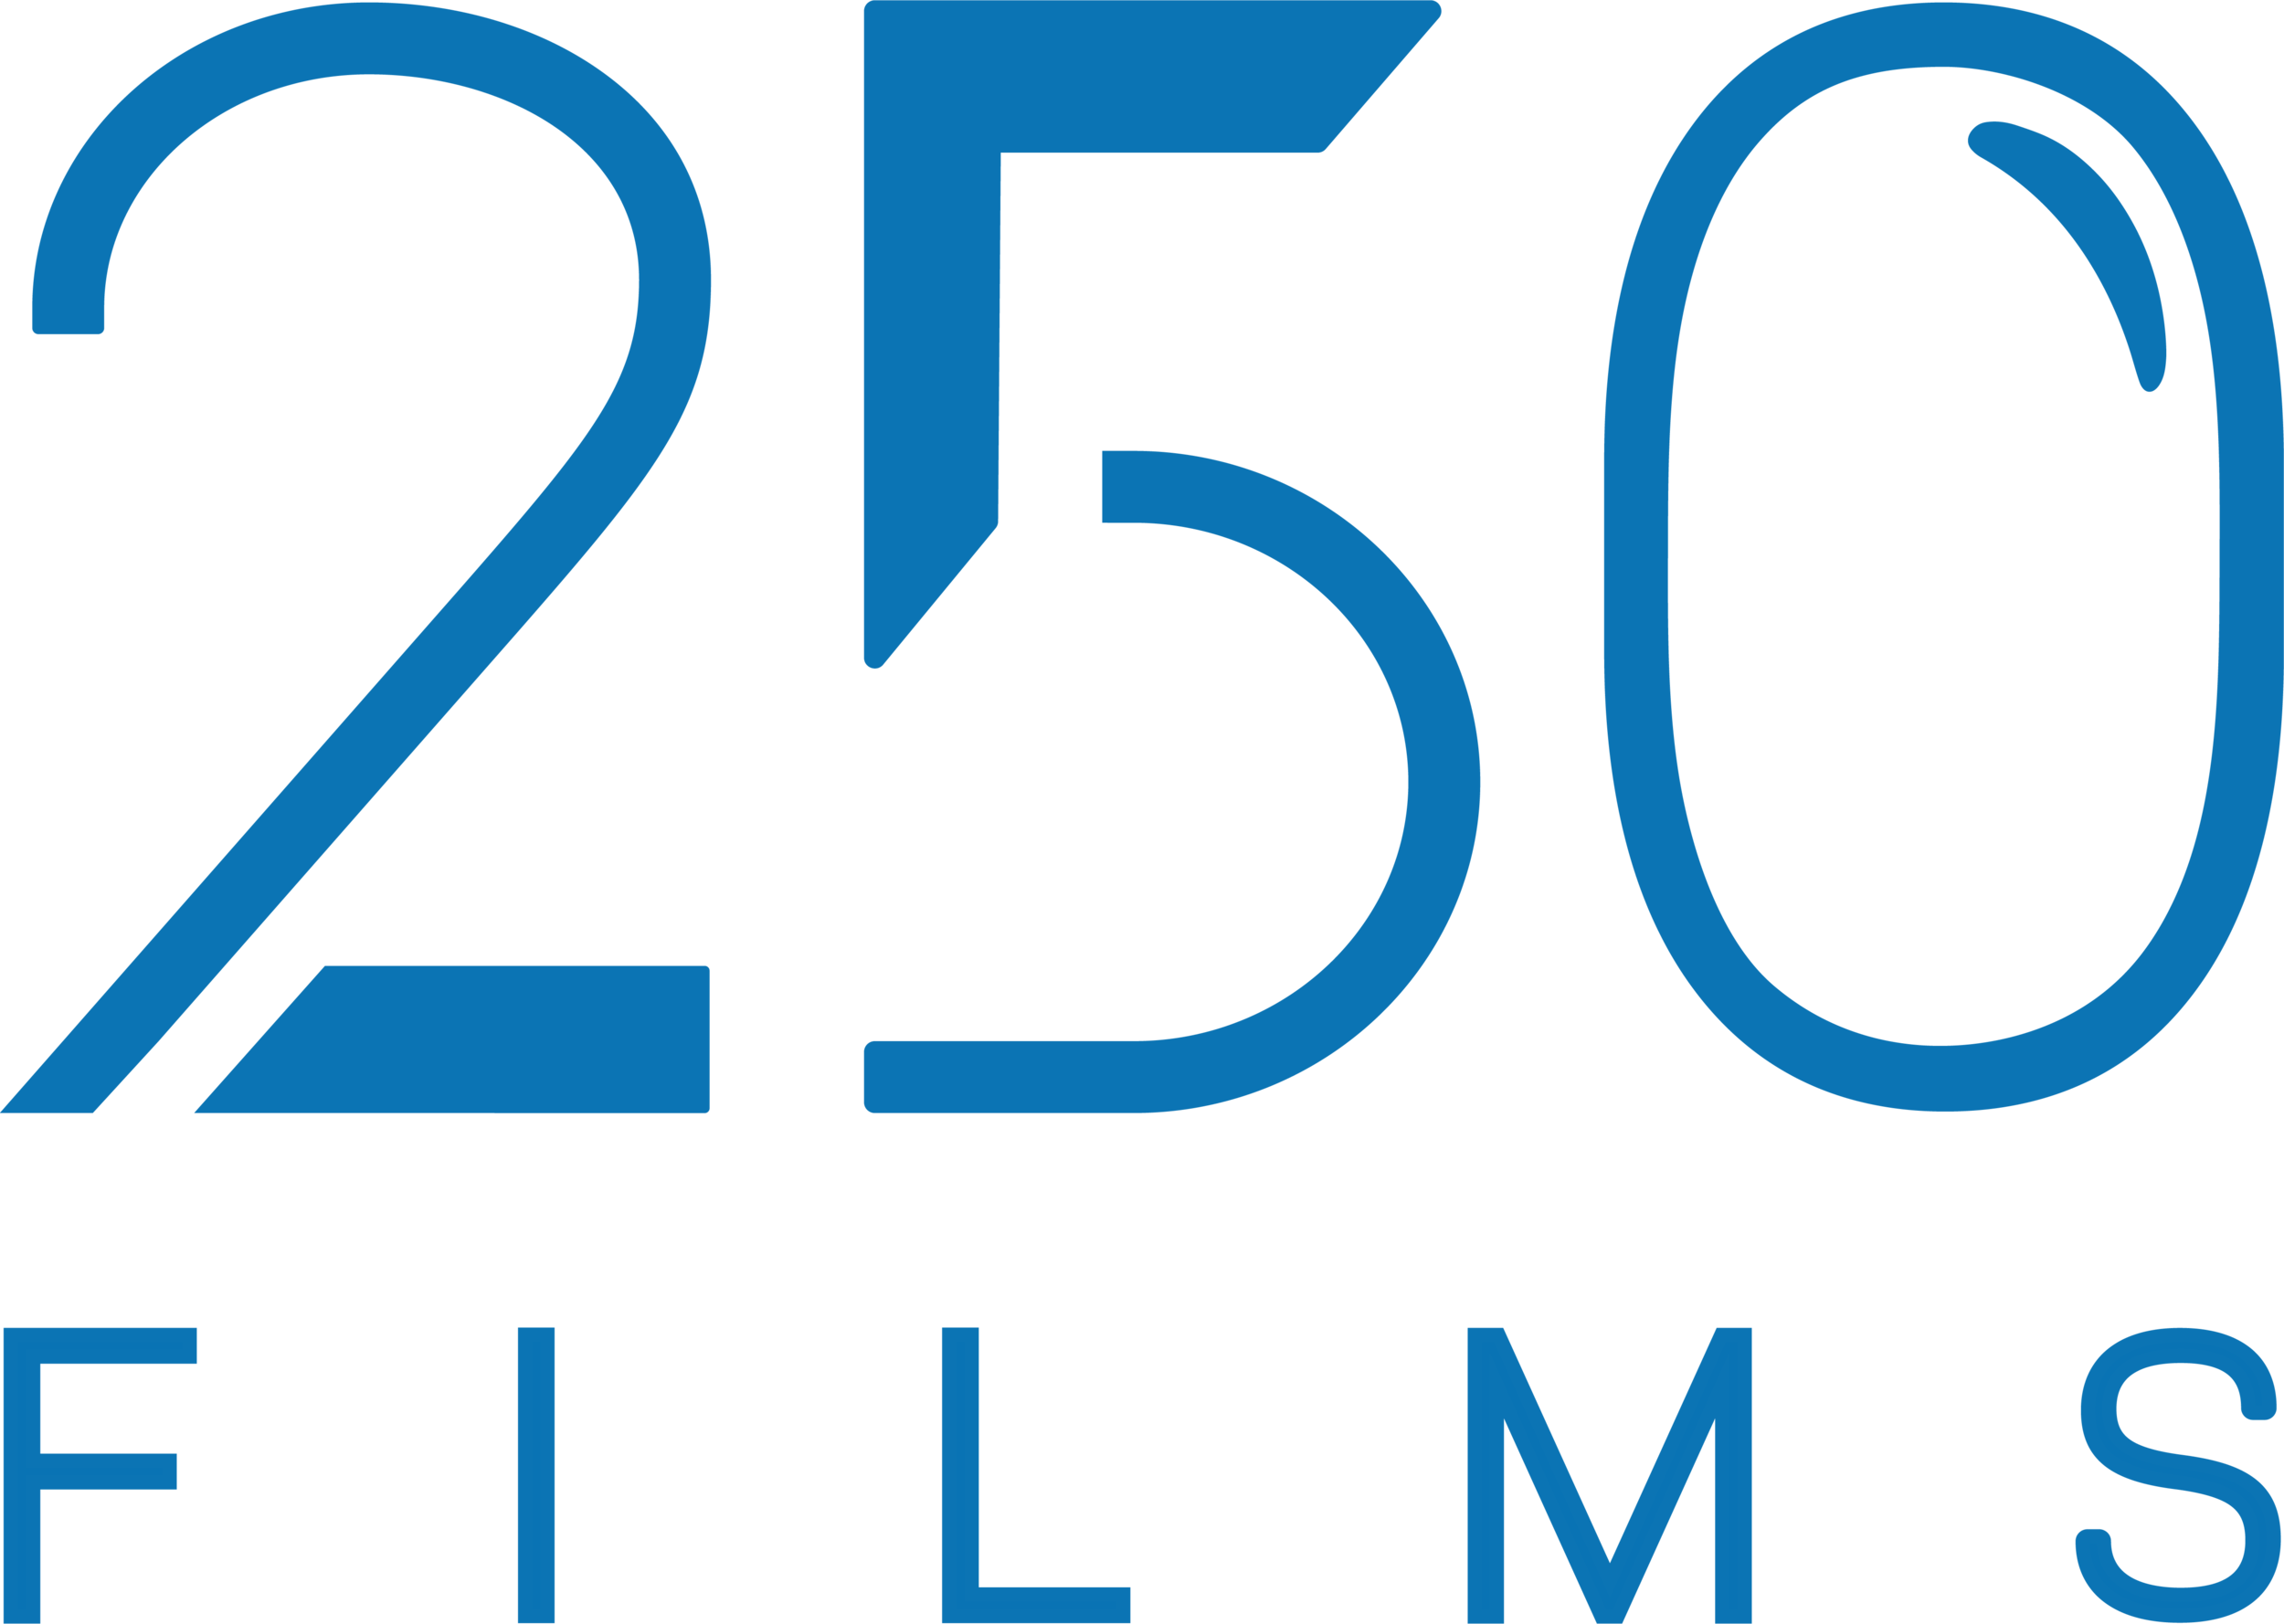 250 Films